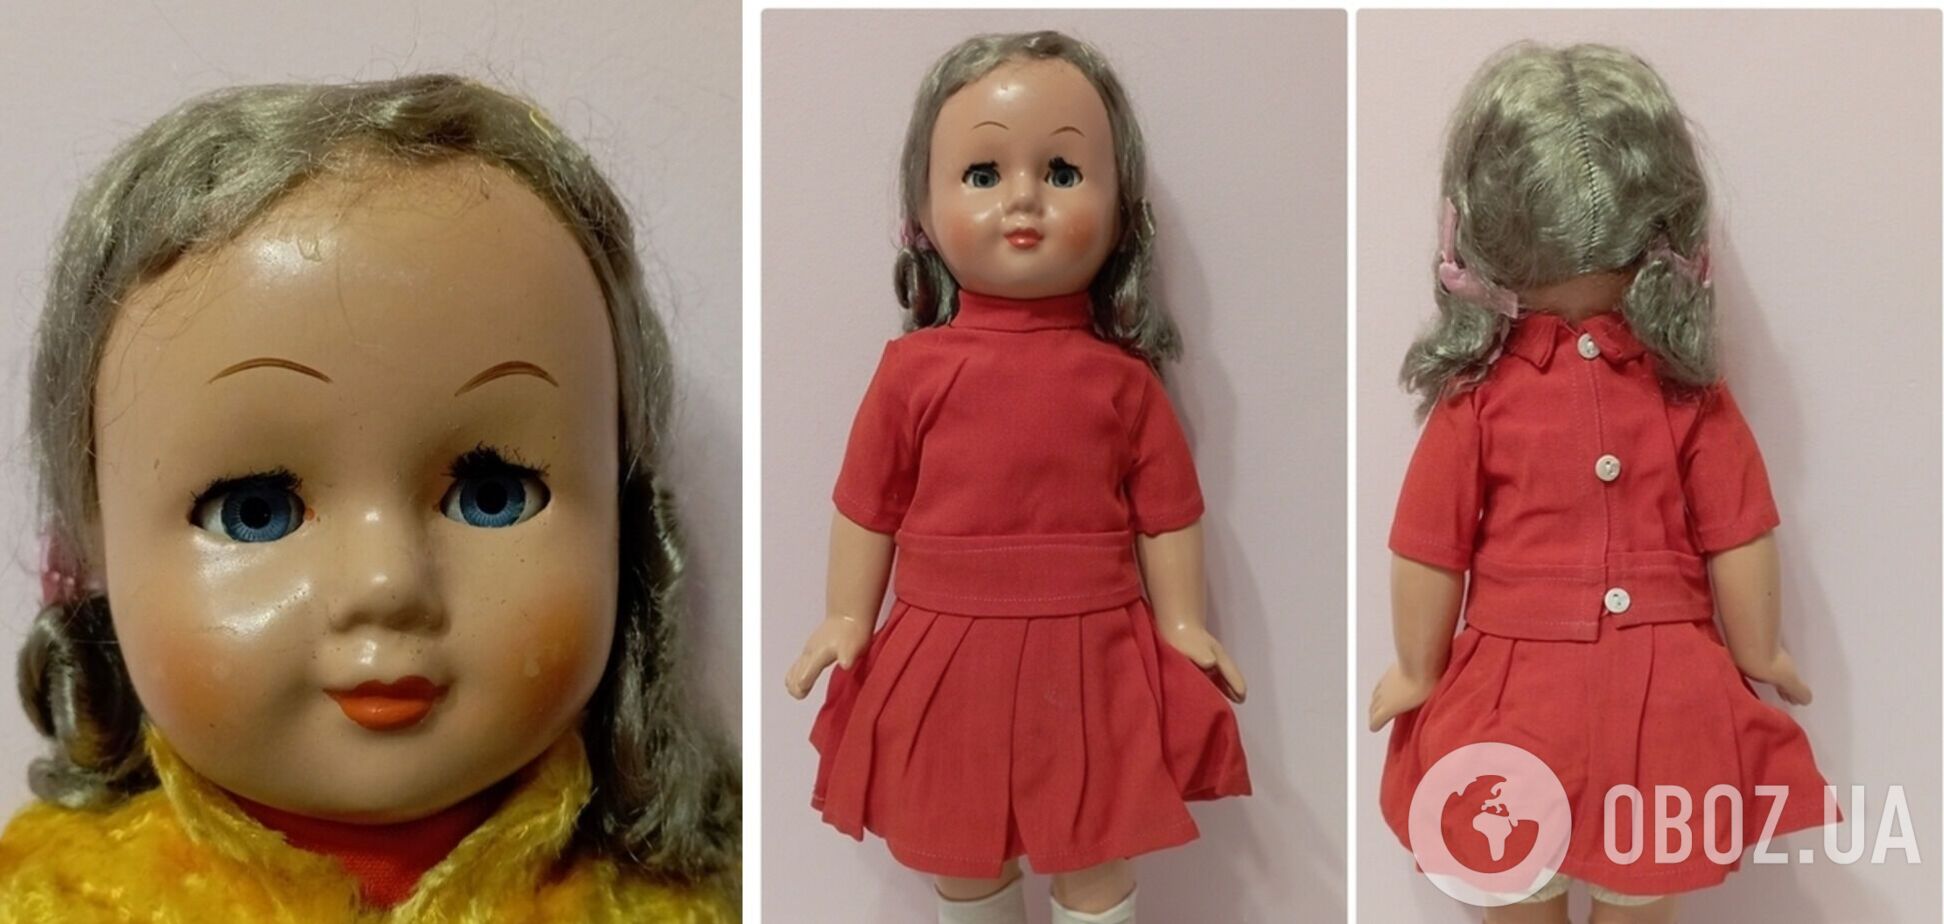 Ляльку 1950-х років продають майже за 80 тис. грн